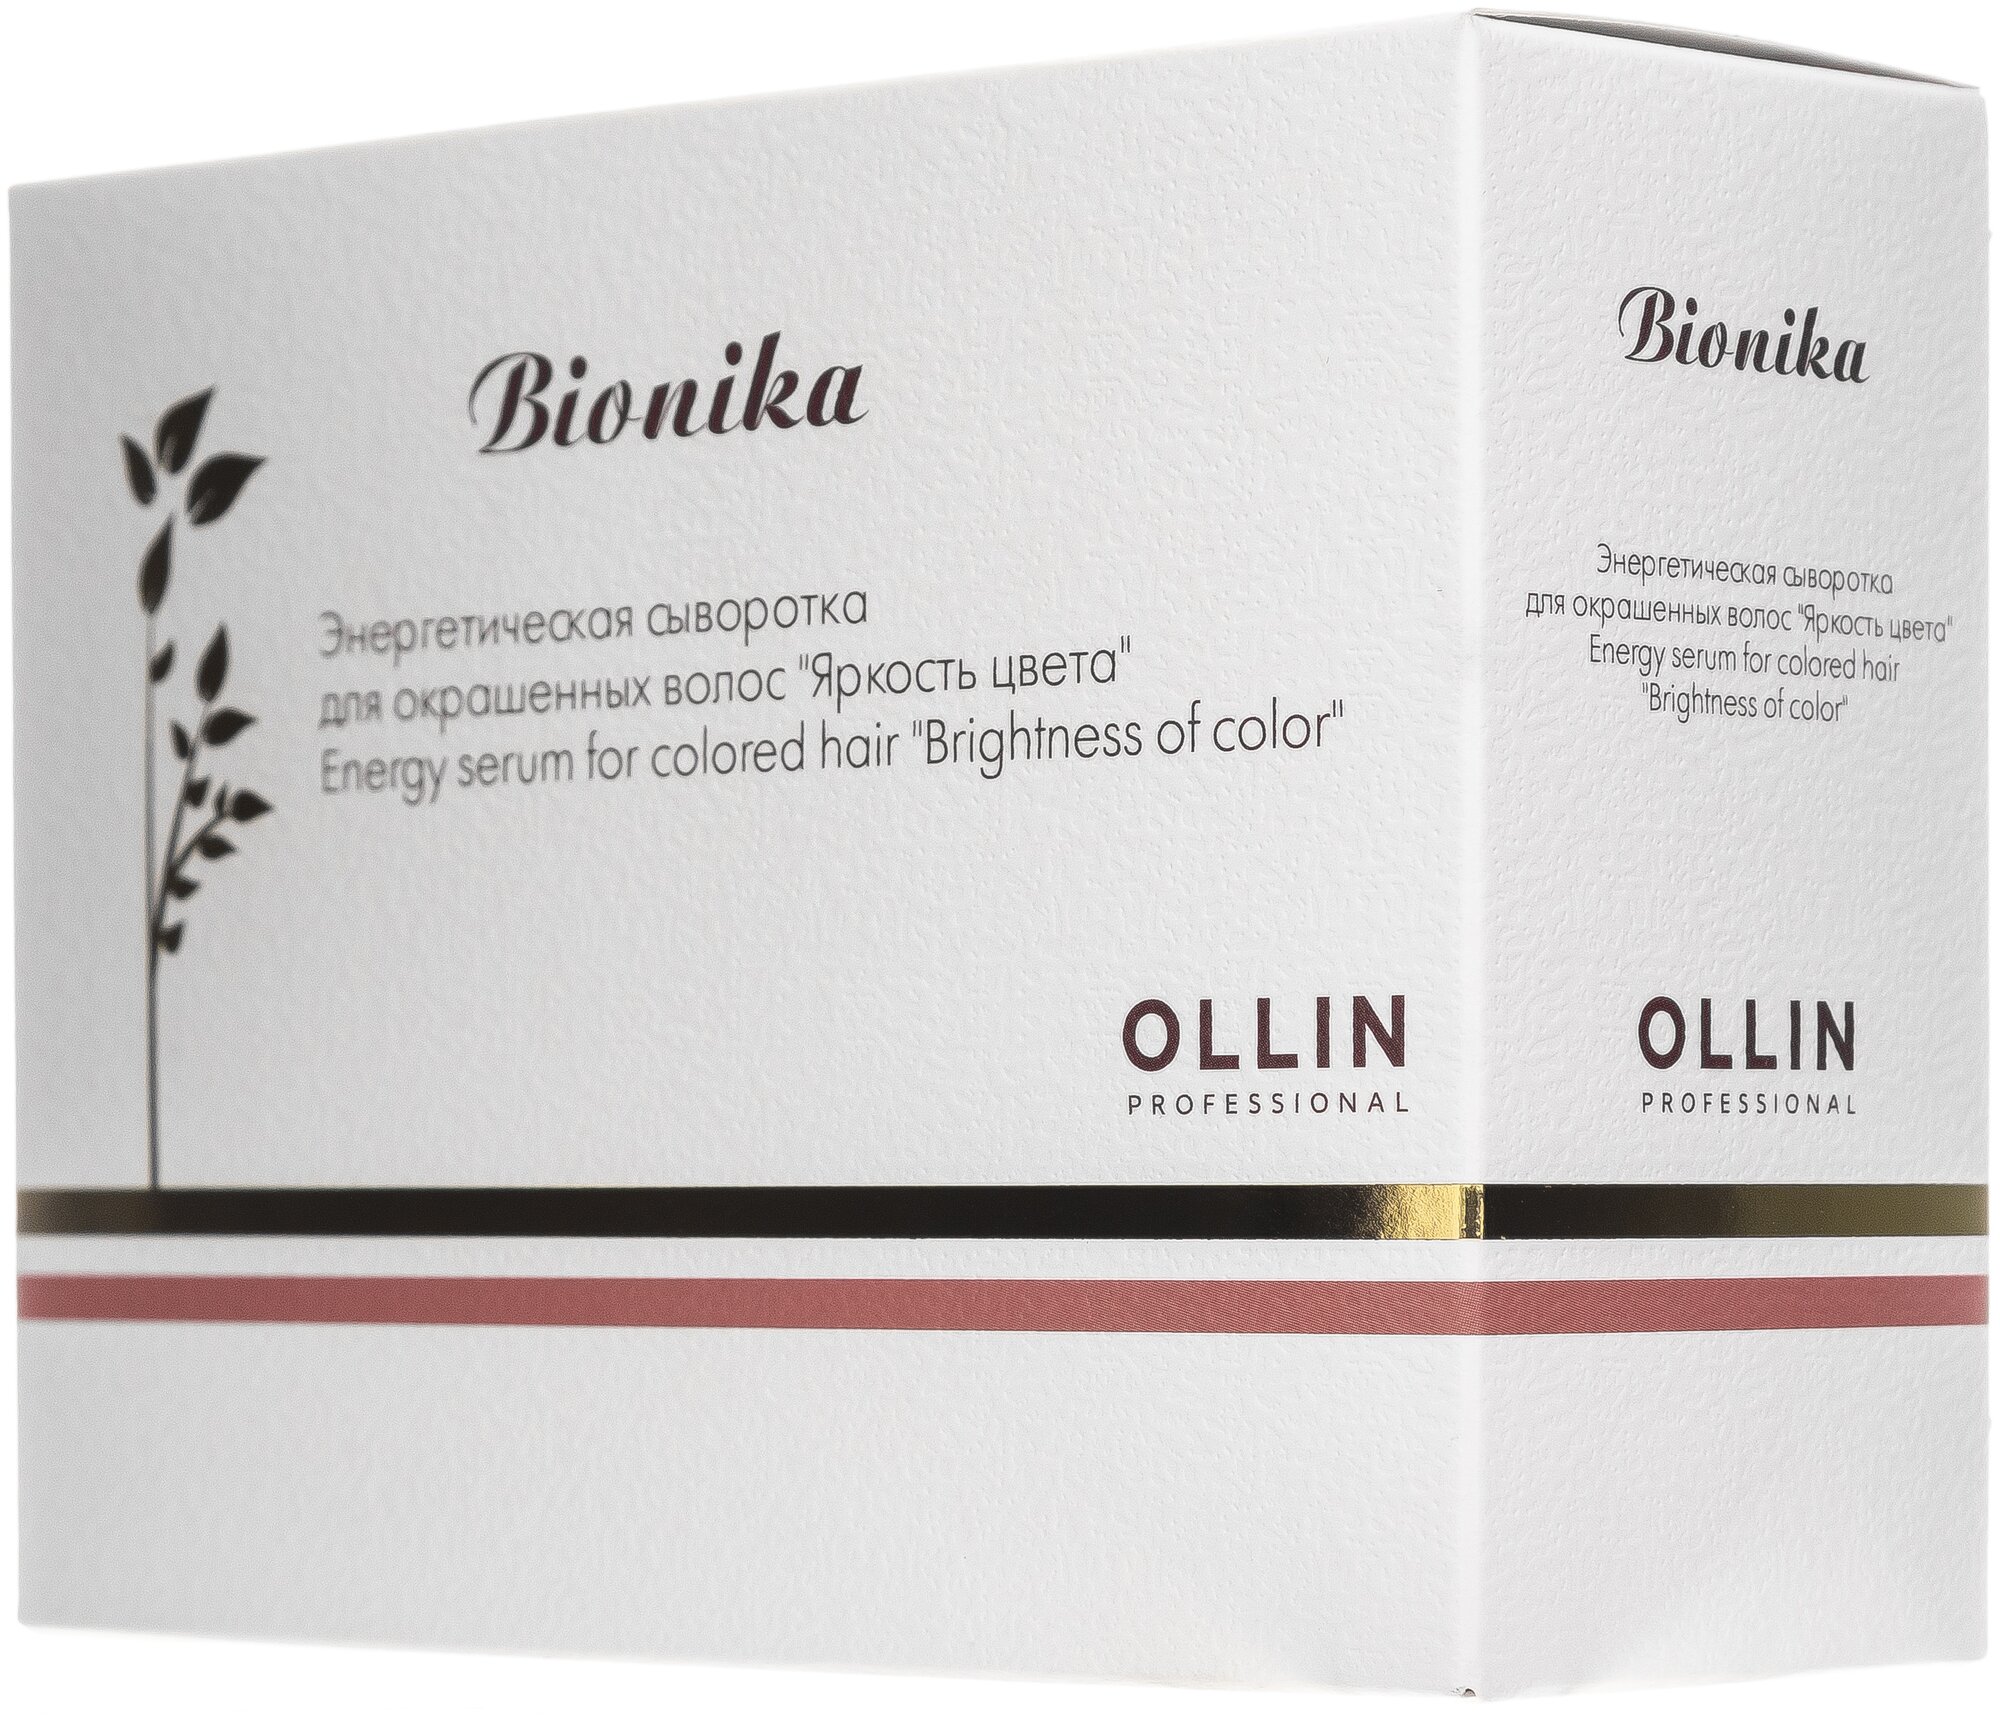 Ollin Professional Энергетическая сыворотка для окрашенных волос Яркость цвета 6 х 15 мл (Ollin Professional, ) - фото №3